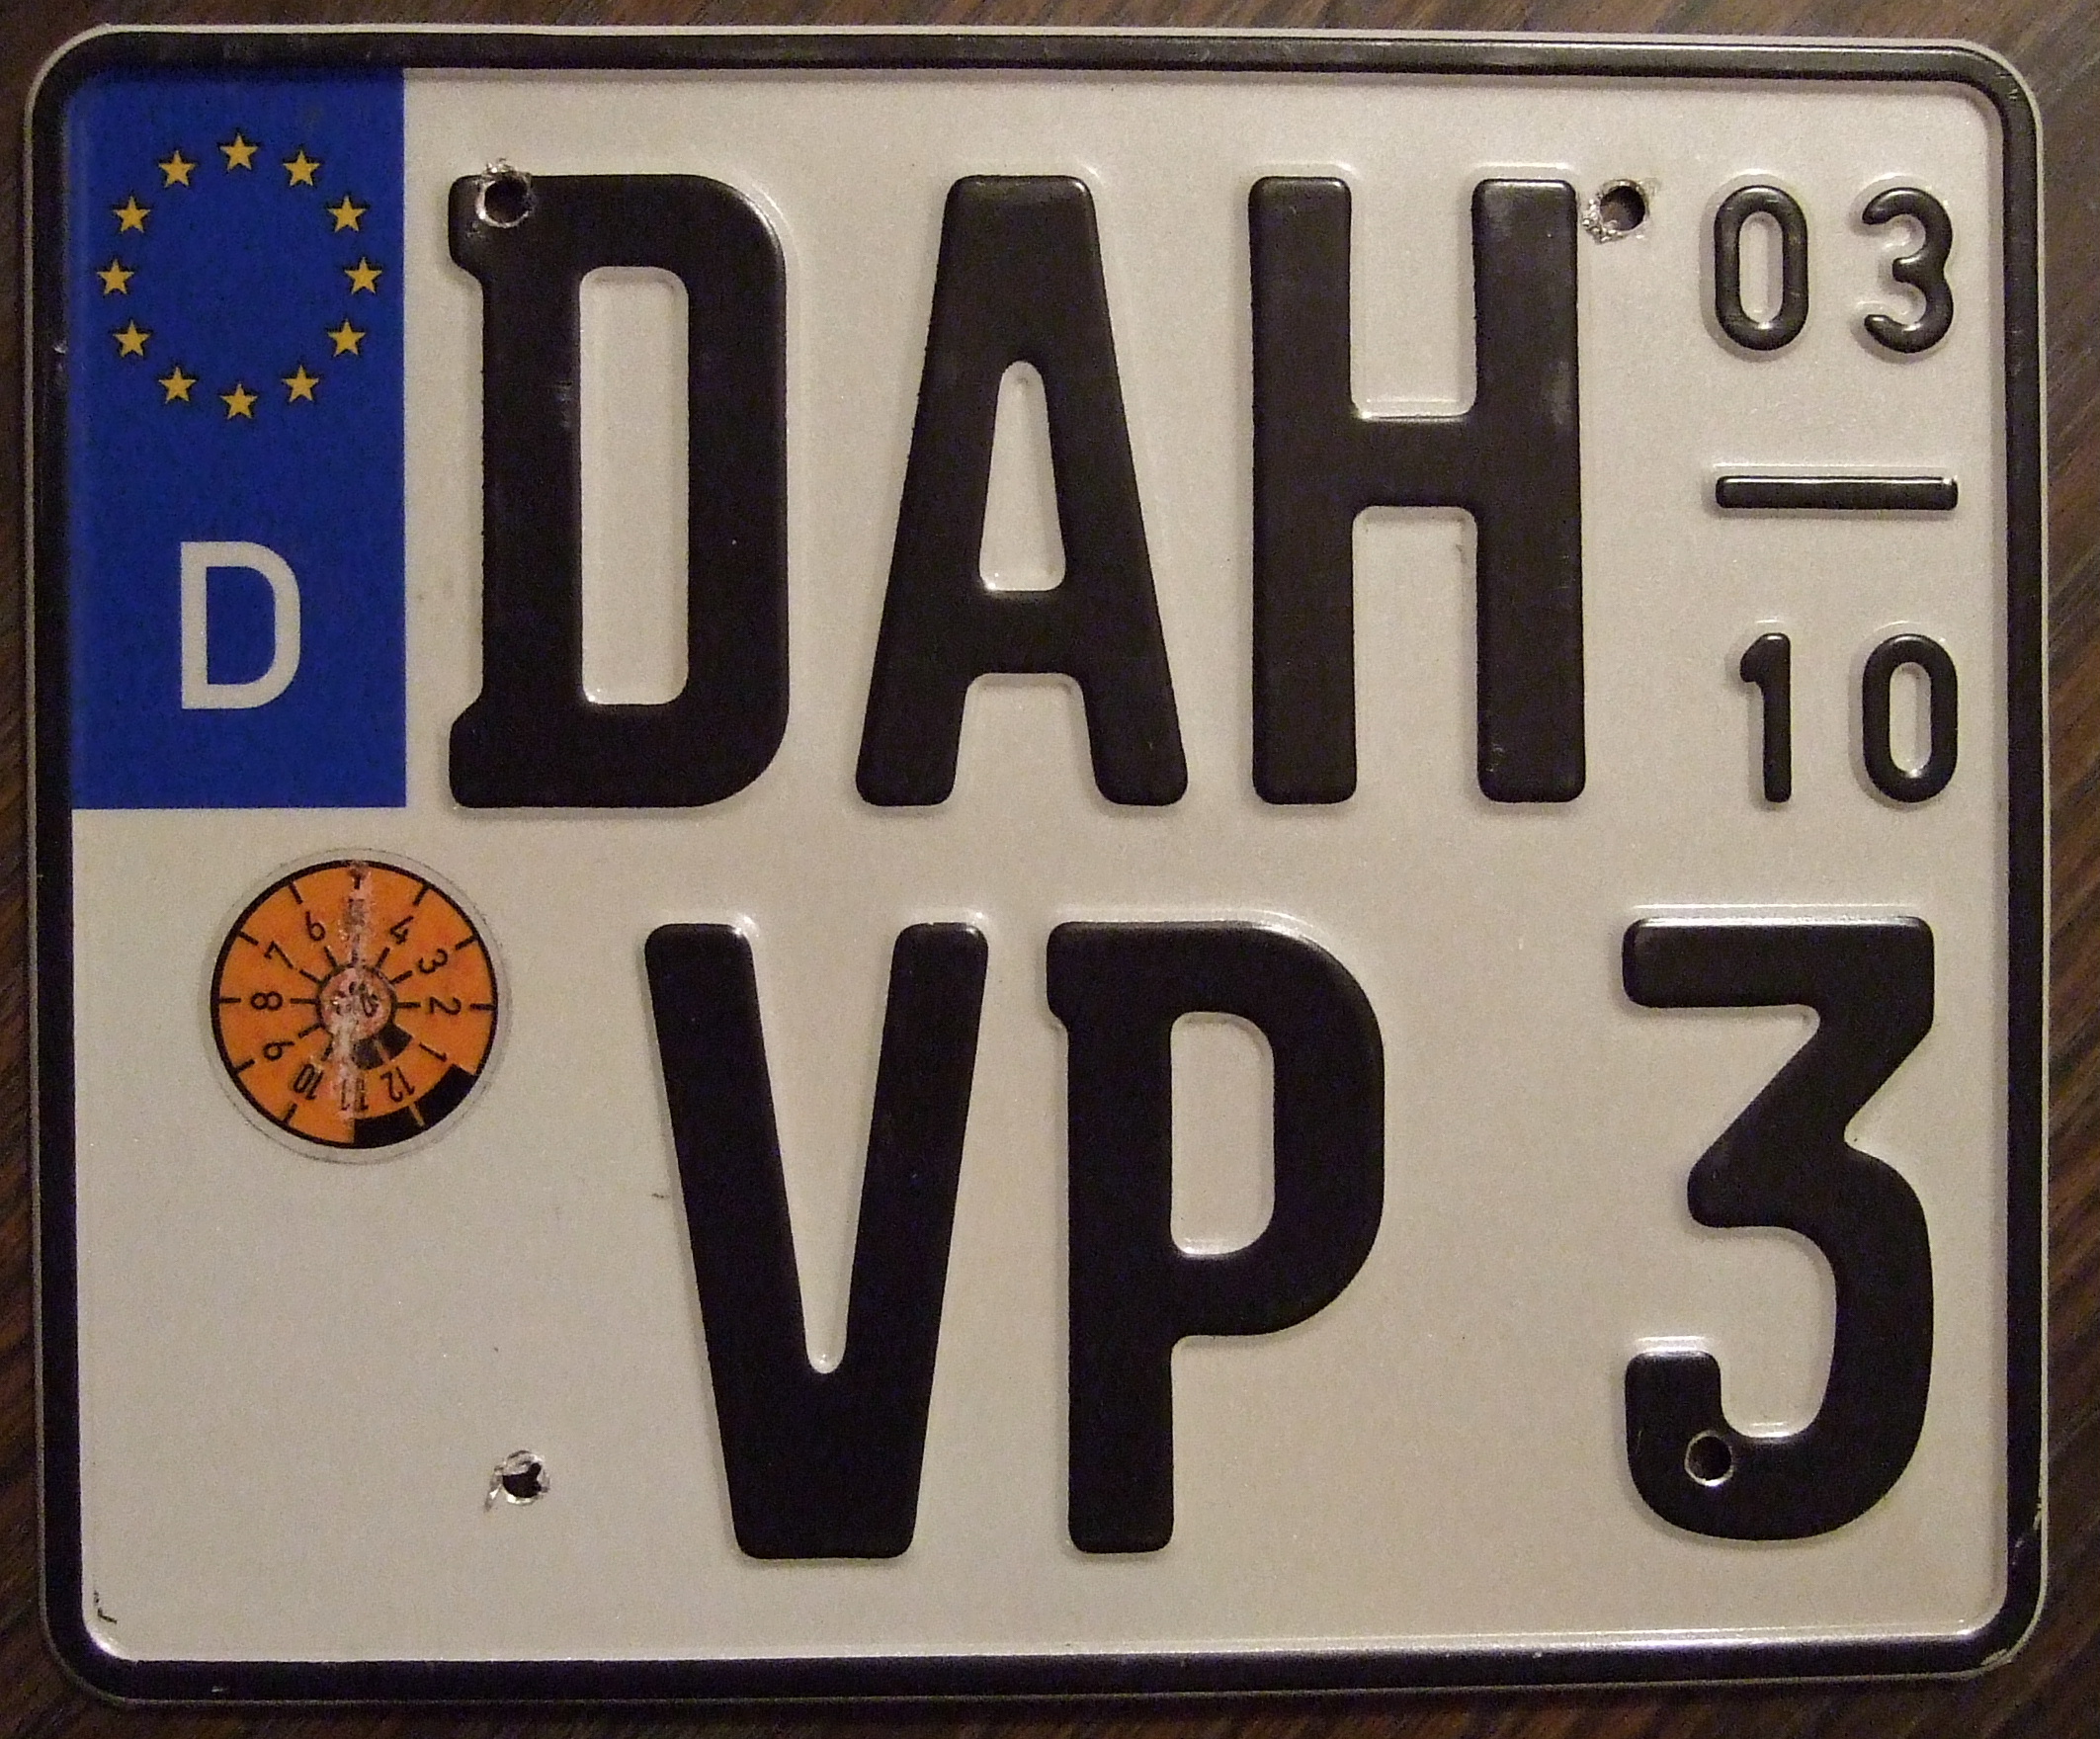 German plate